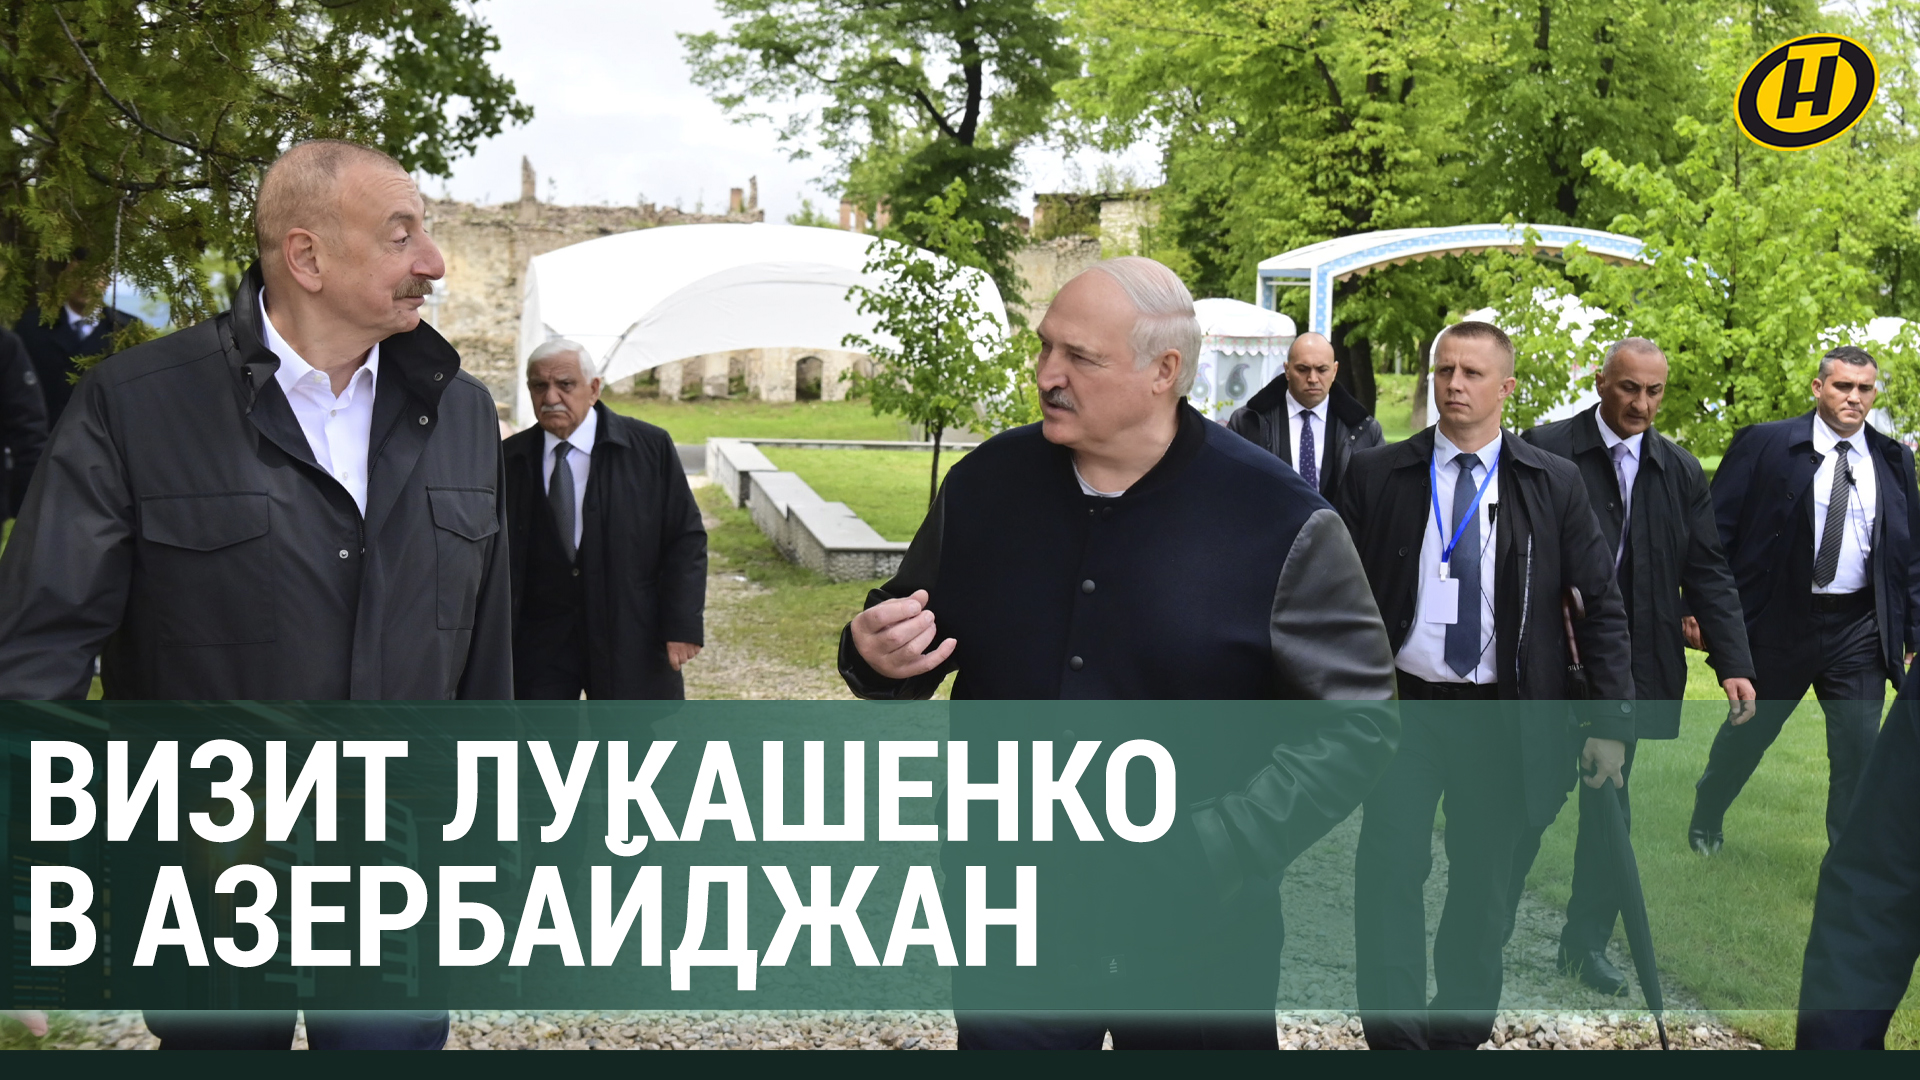 БЕЛАРУСЬ И АЗЕРБАЙДЖАН. О чем договорились Лукашенко с Алиевым во время госвизита?